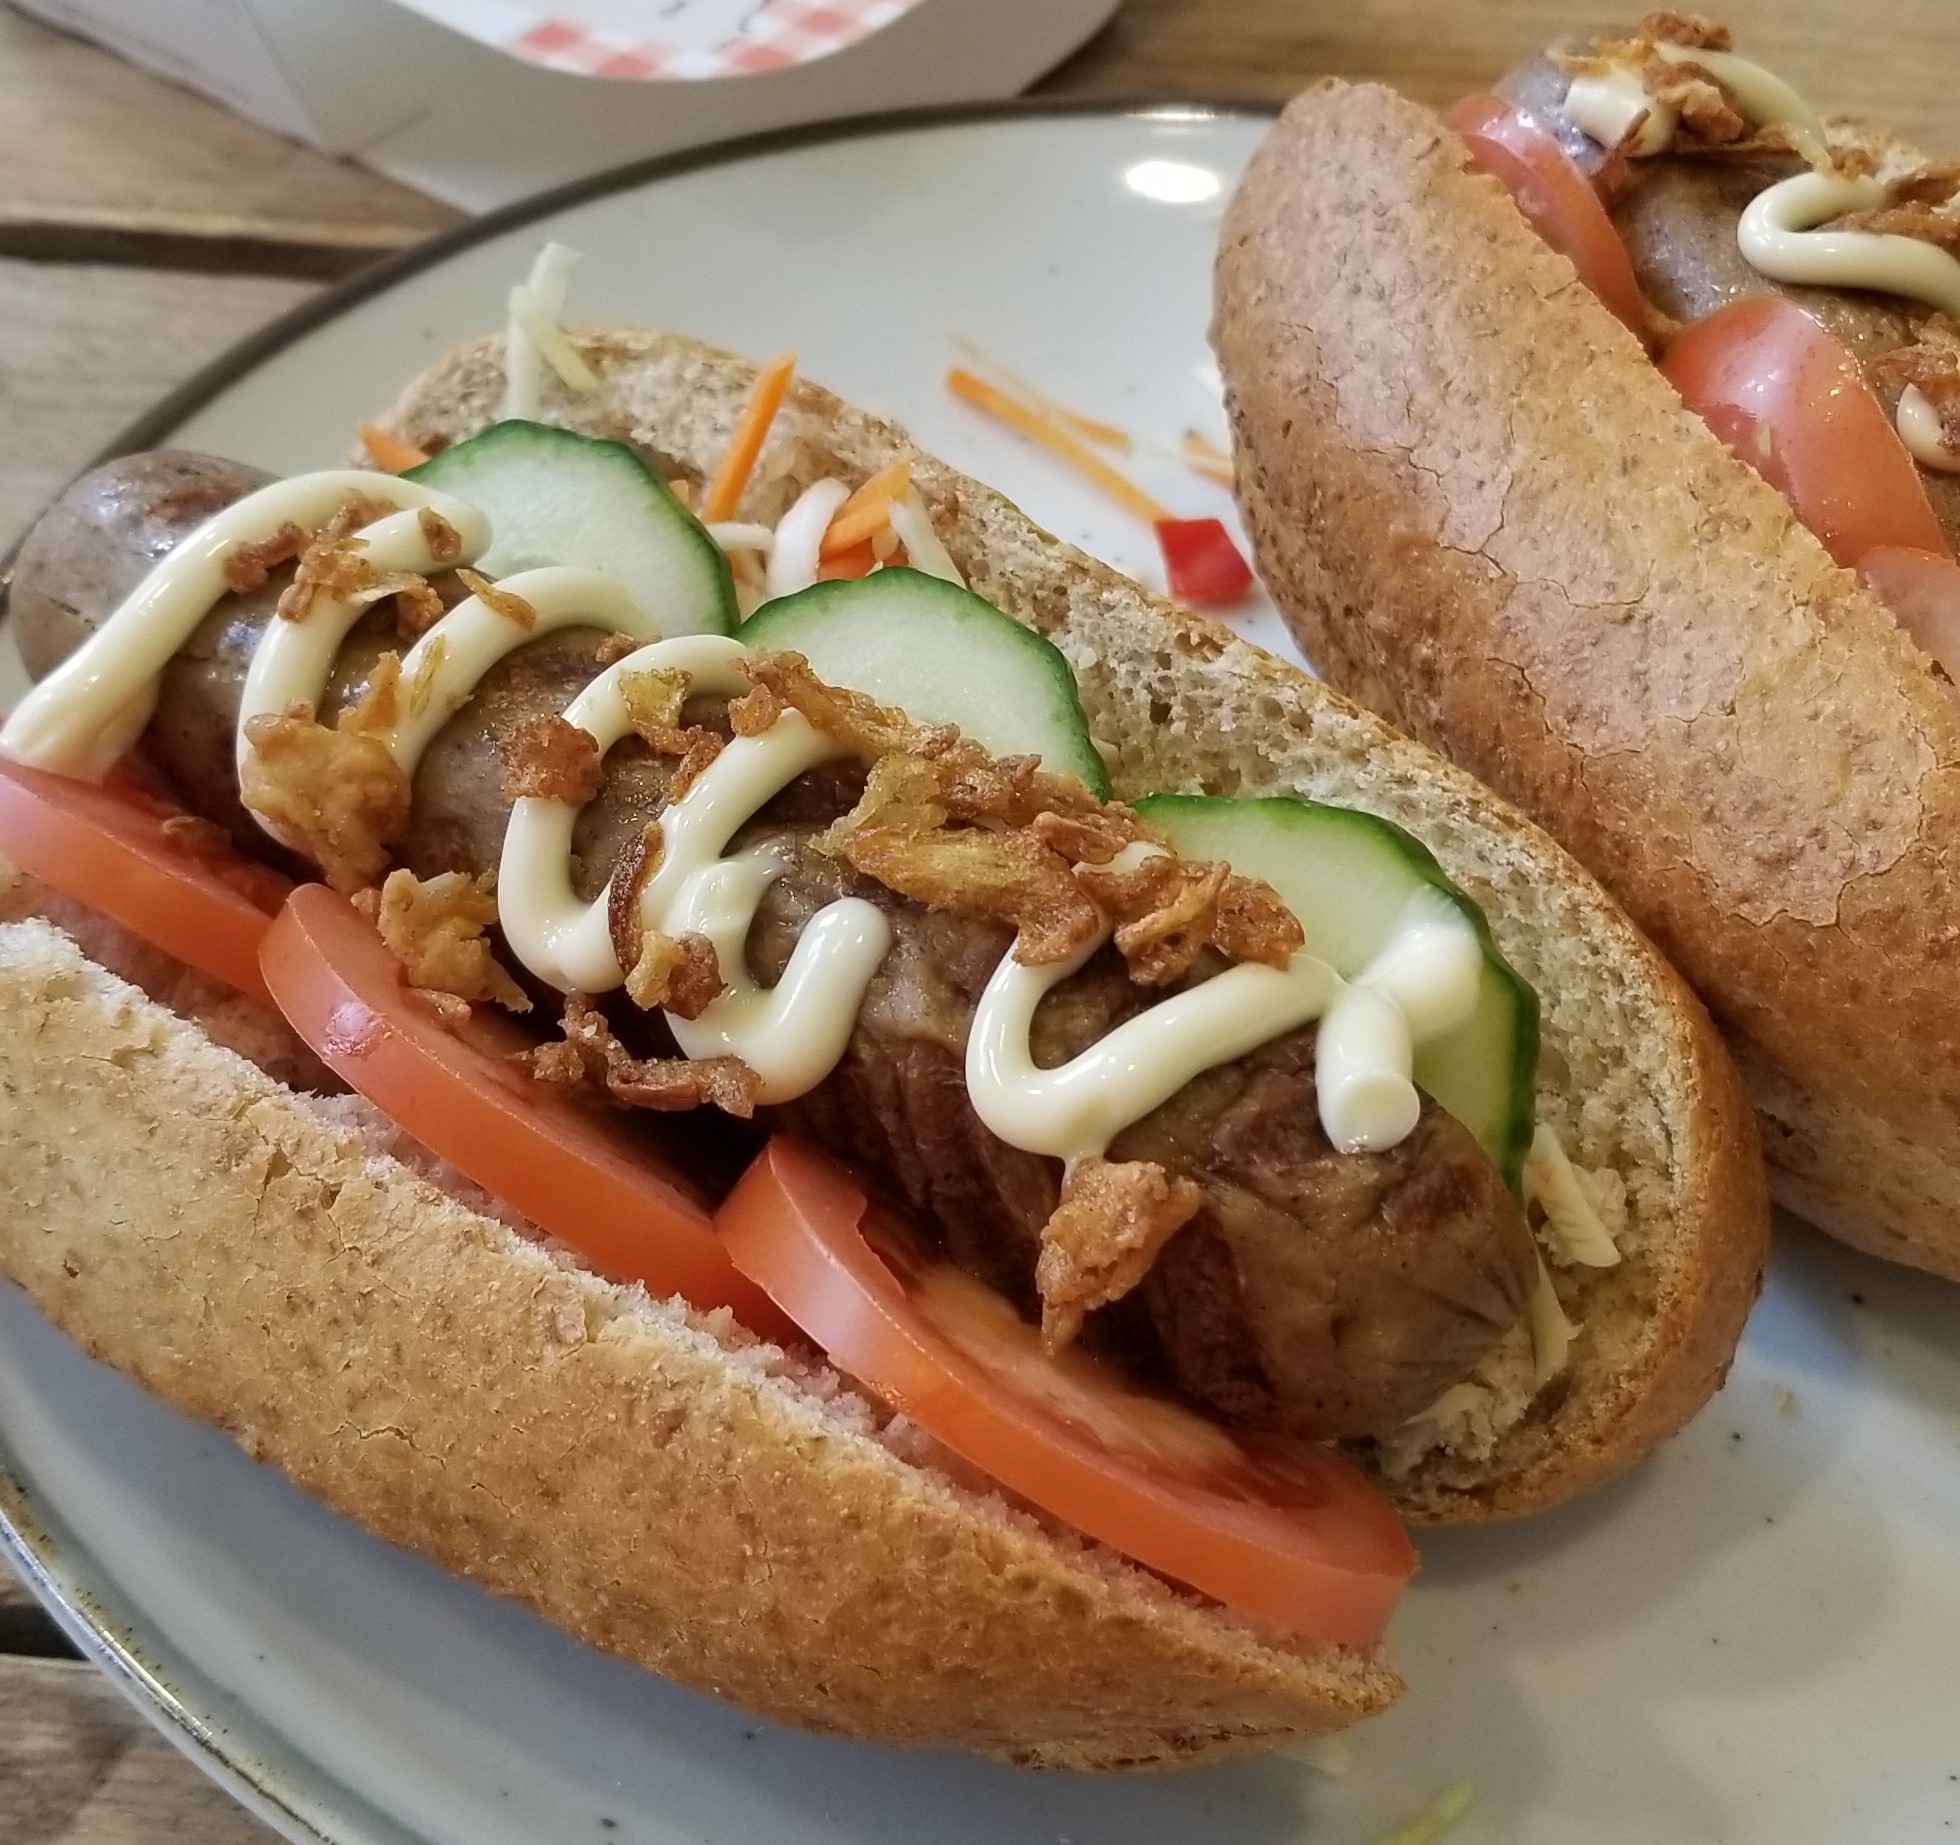 Gezonde hotdogs maken met vegetarische slager bratwurst